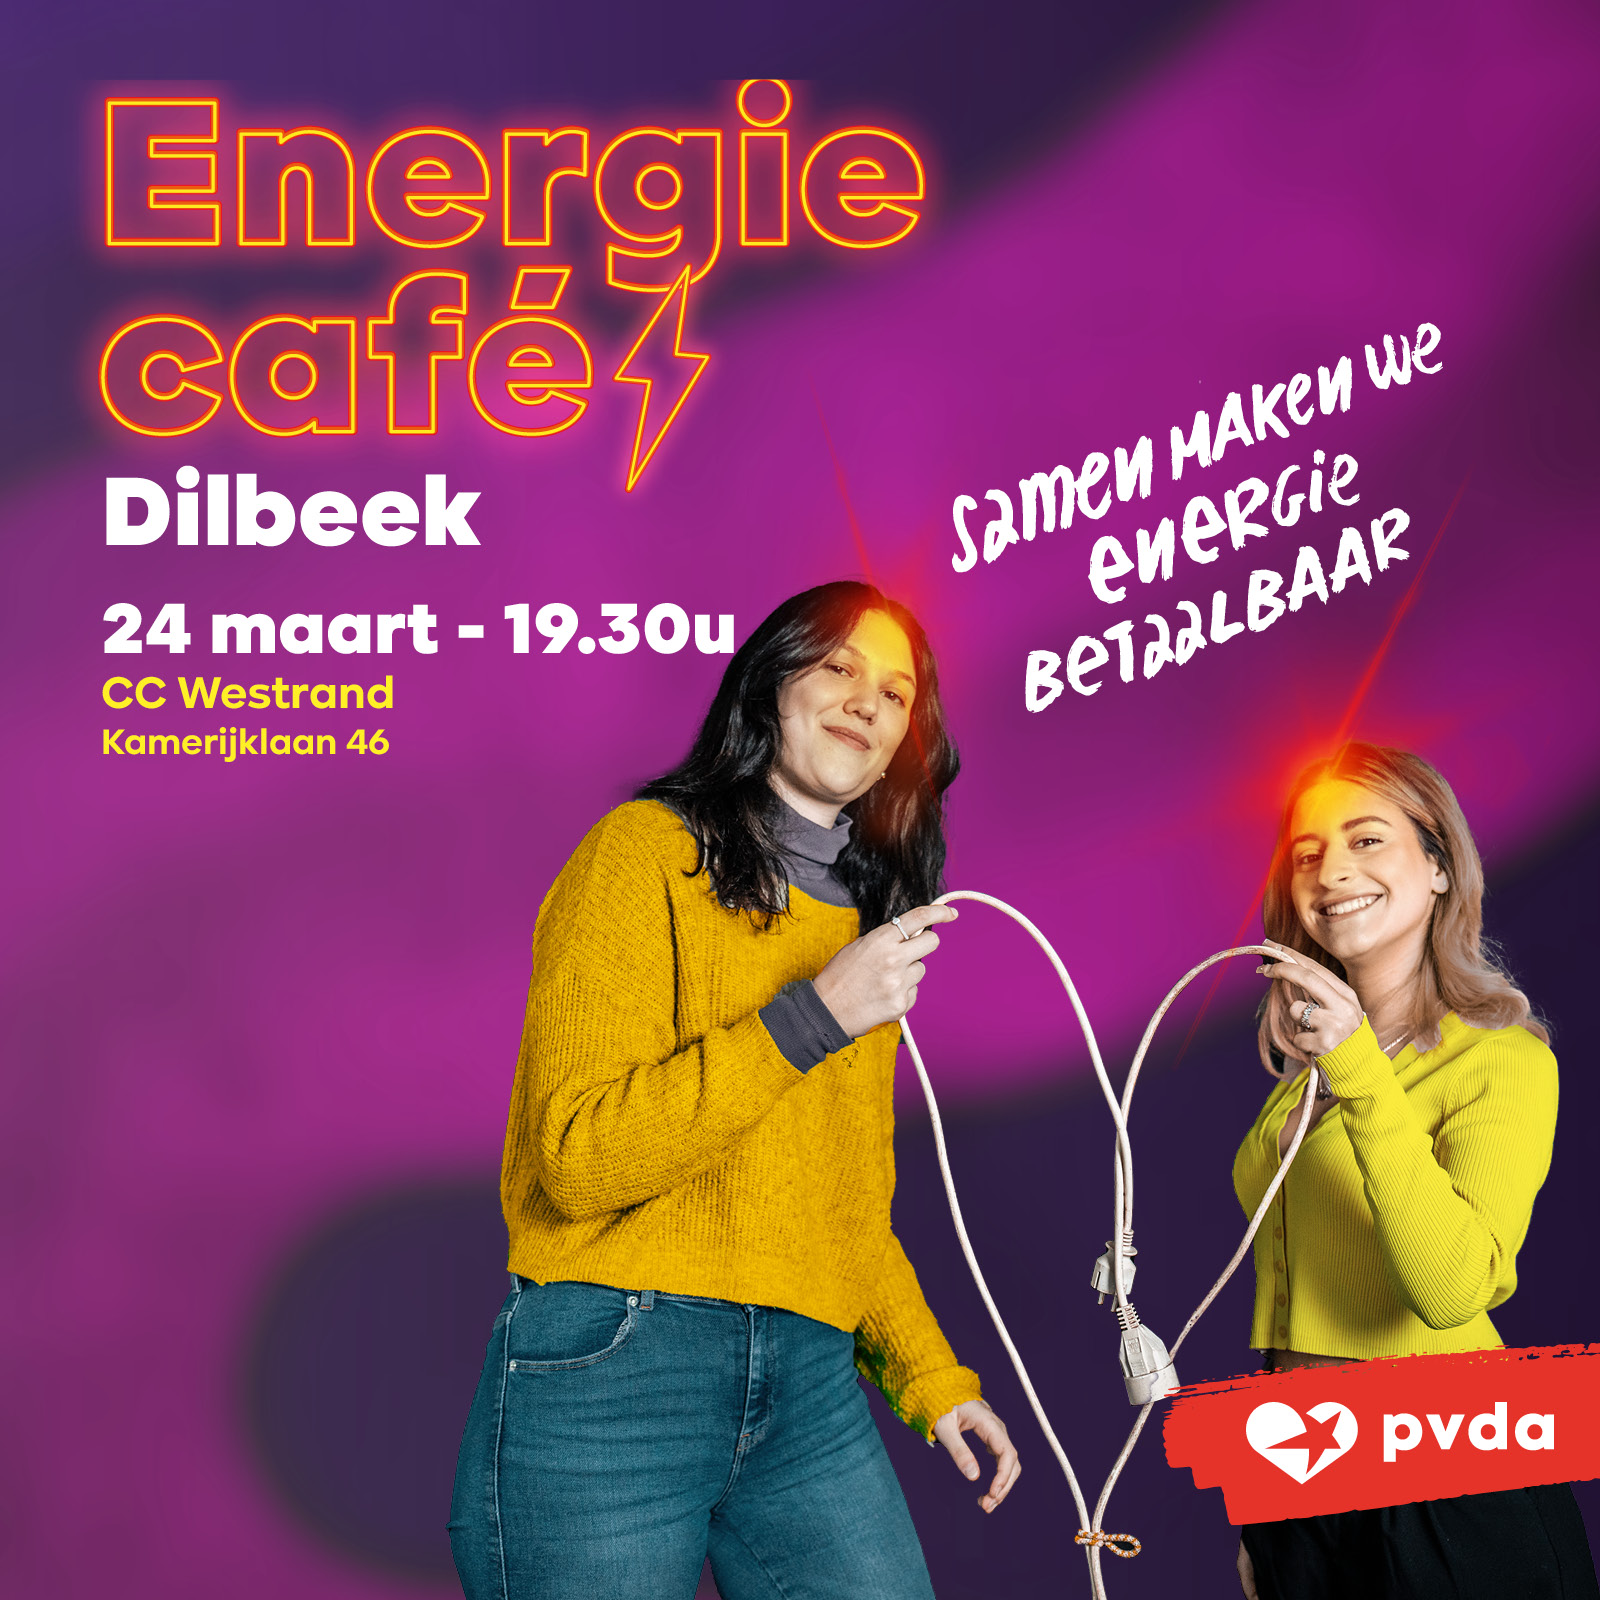 Energiecafé Dilbeek